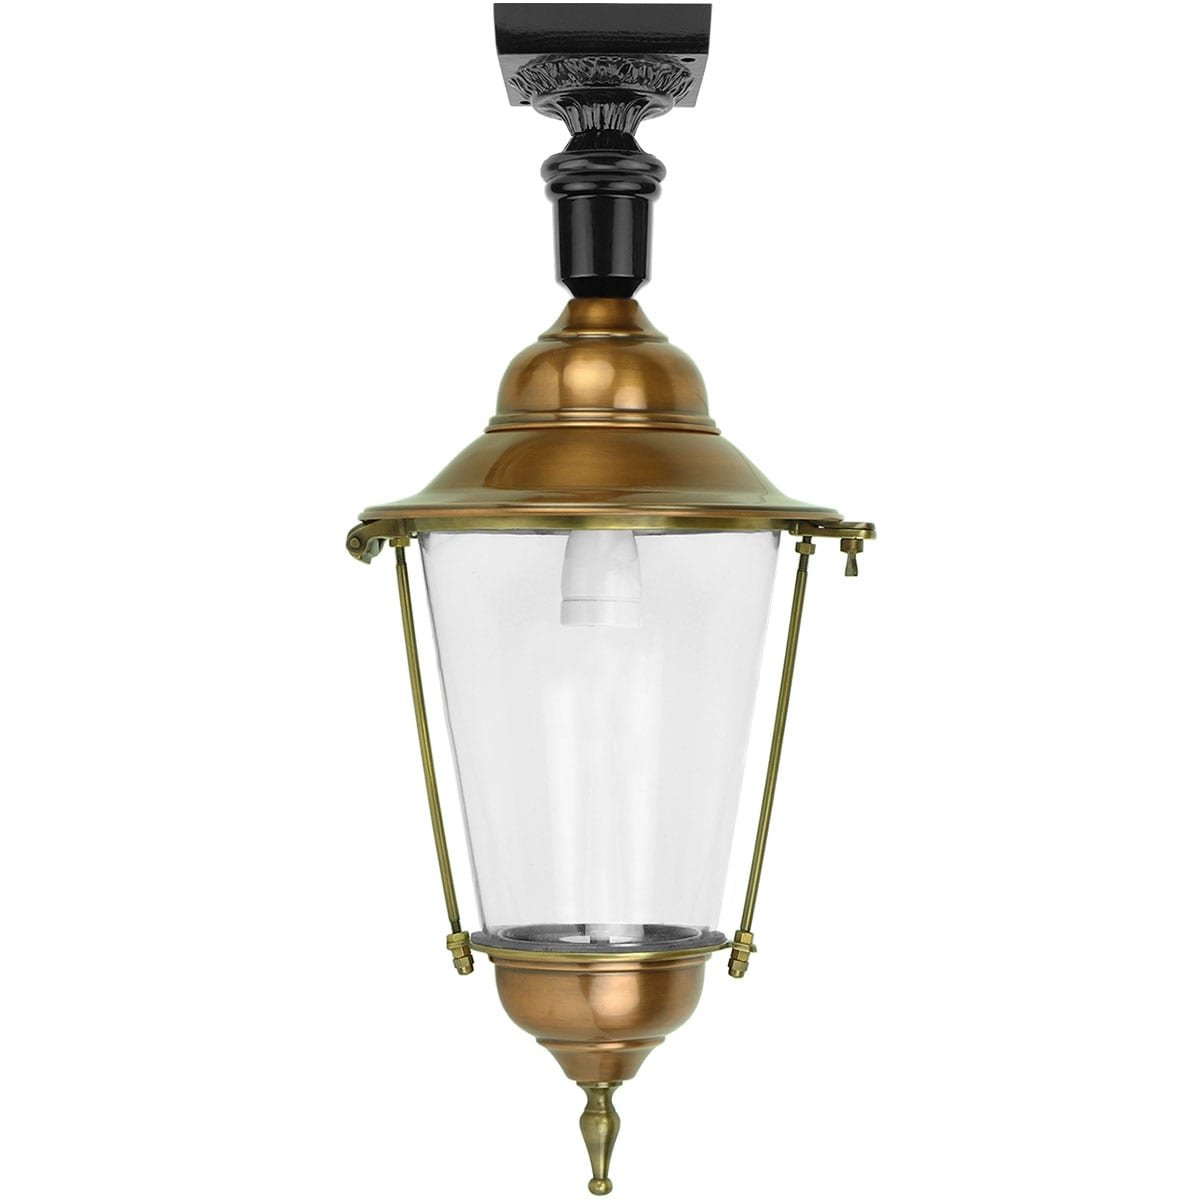 Ceiling lantern Balkbrug copper - 69 cm